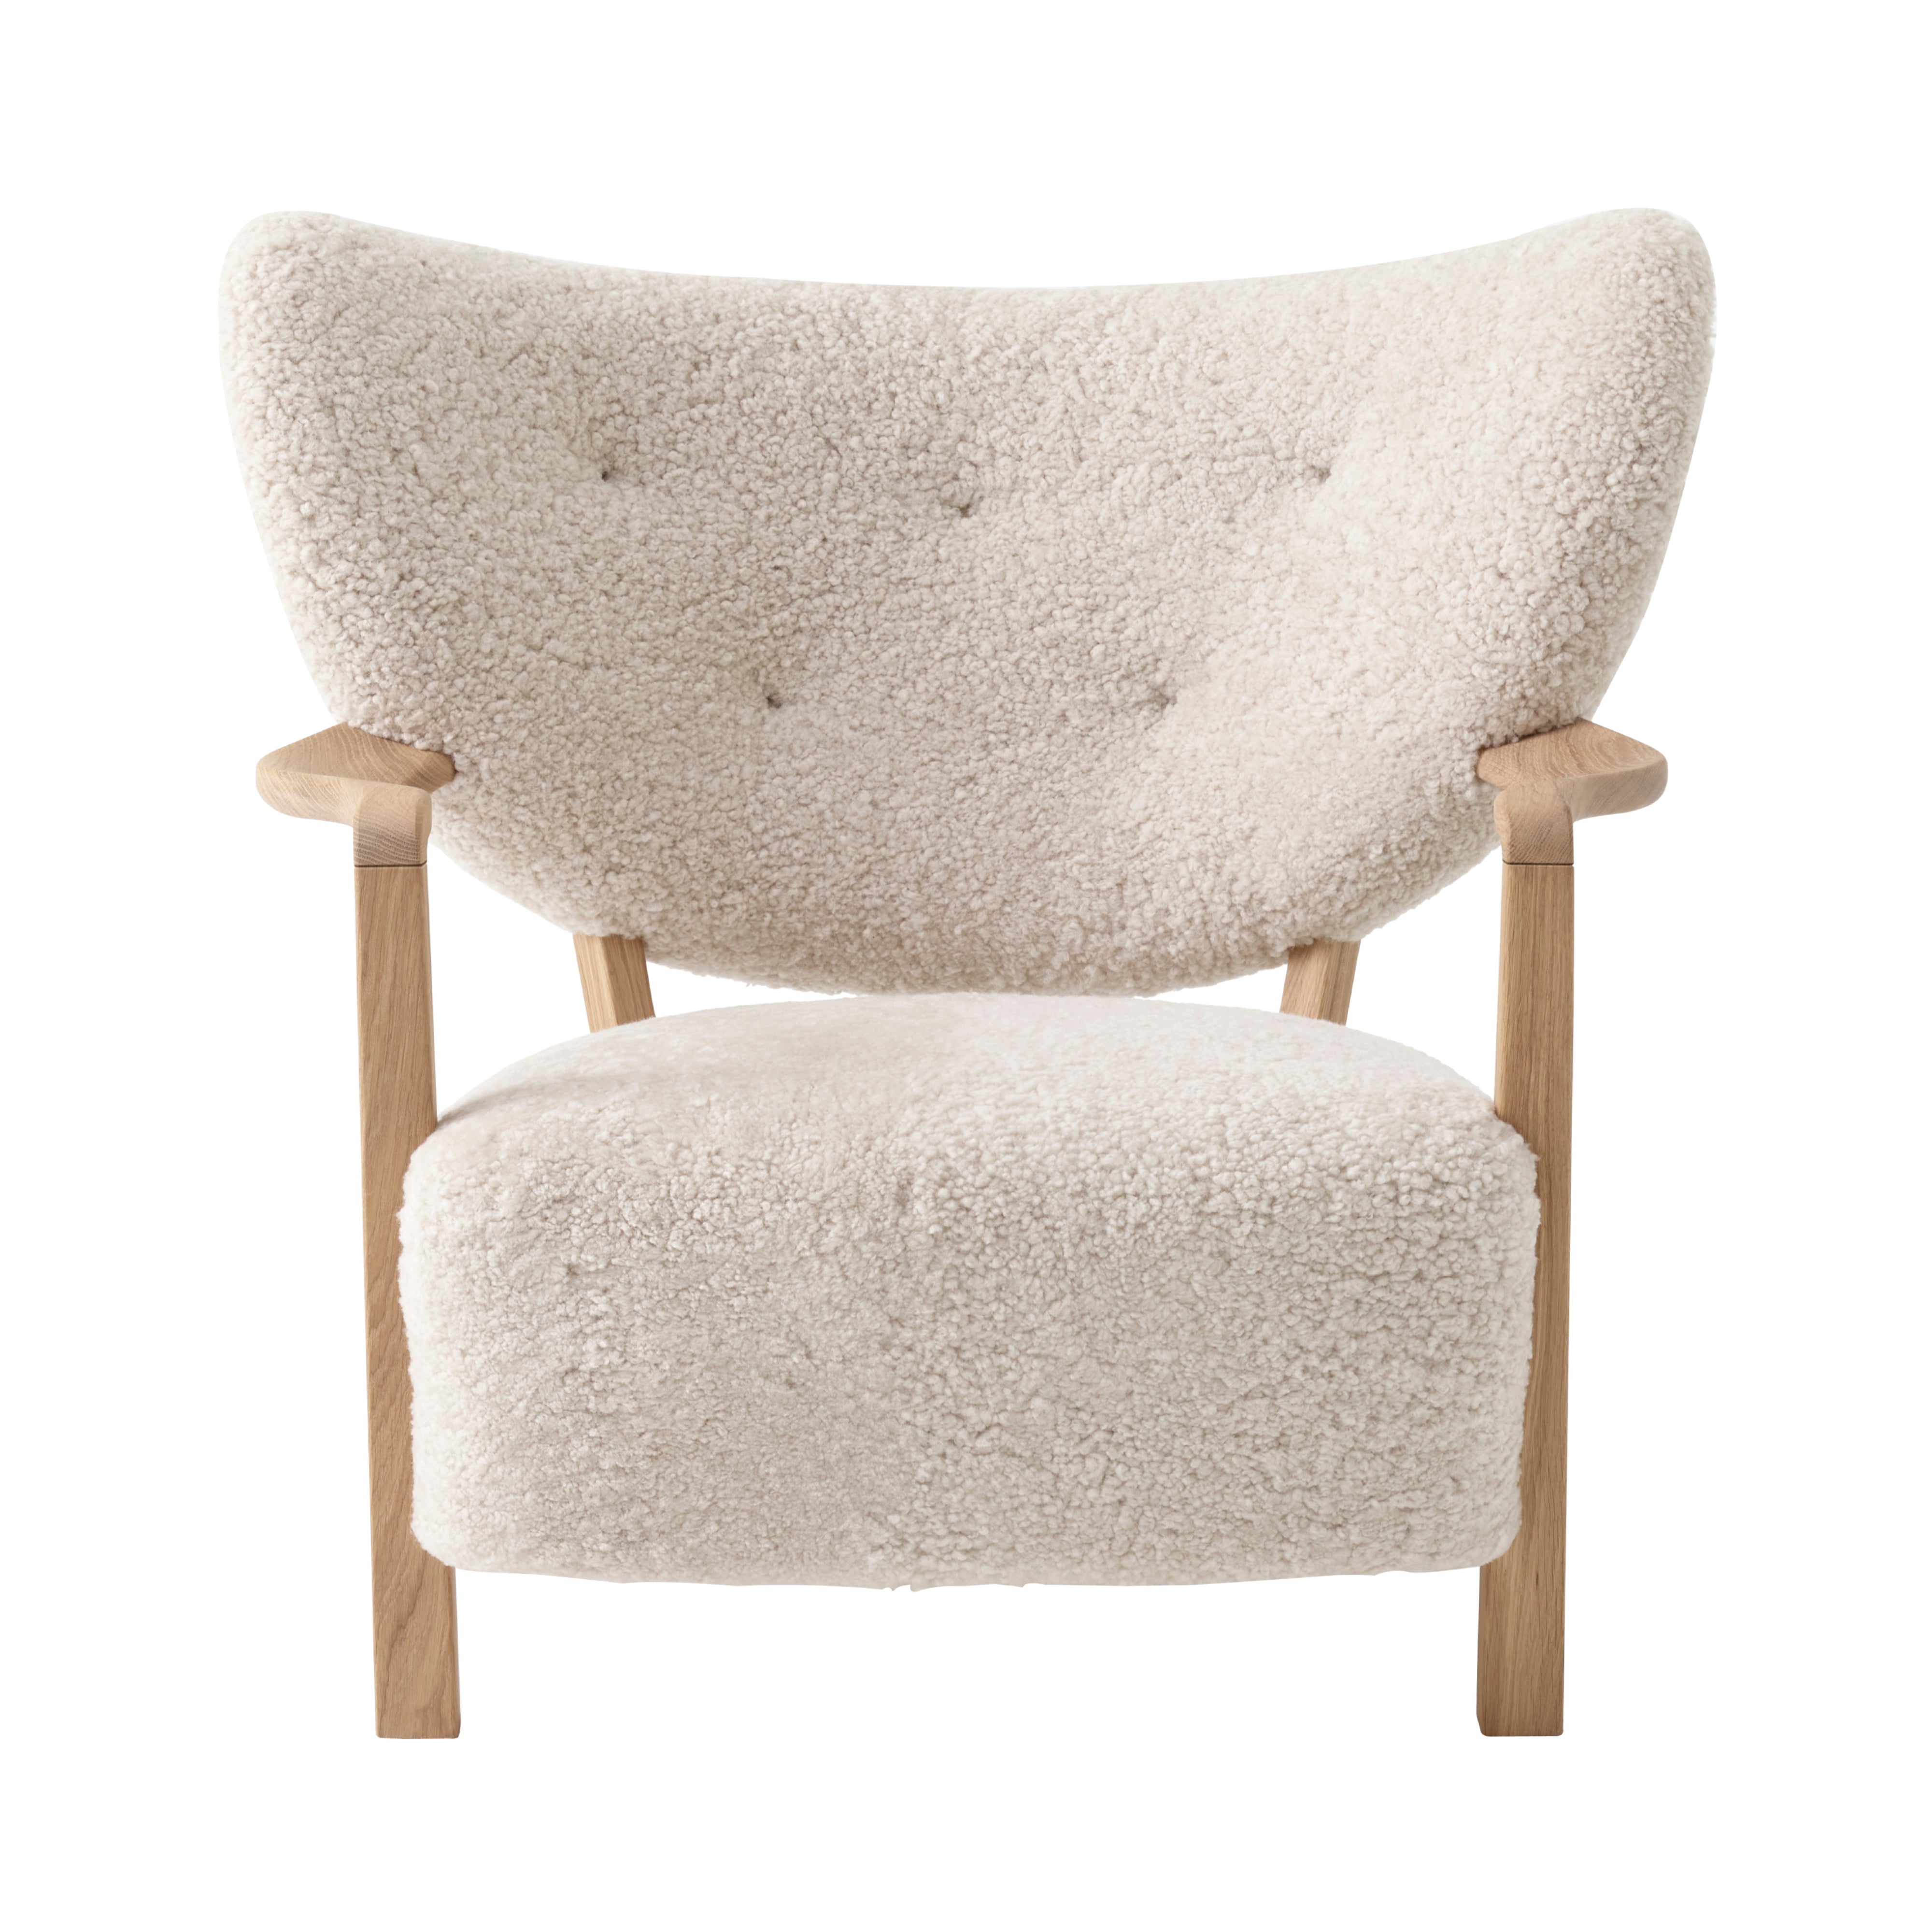 Wulff Lounge Chair ATD2: Oak + Sheepskin Moonlight